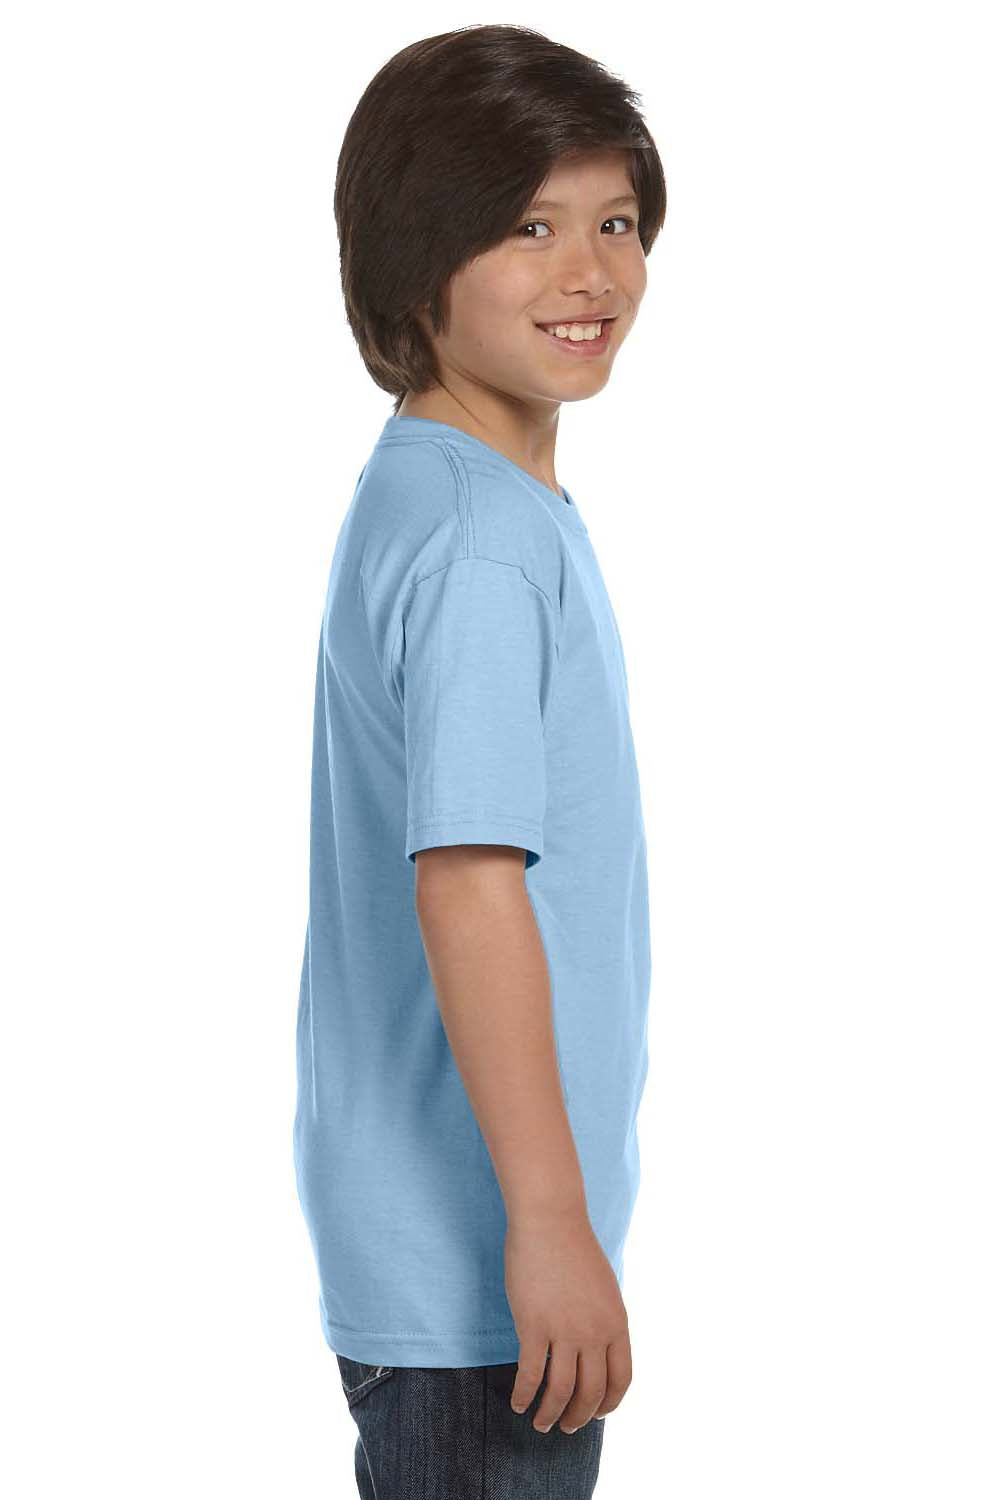 Gildan G800B Youth DryBlend Moisture Wicking Short Sleeve Crewneck T-Shirt Light Blue Side